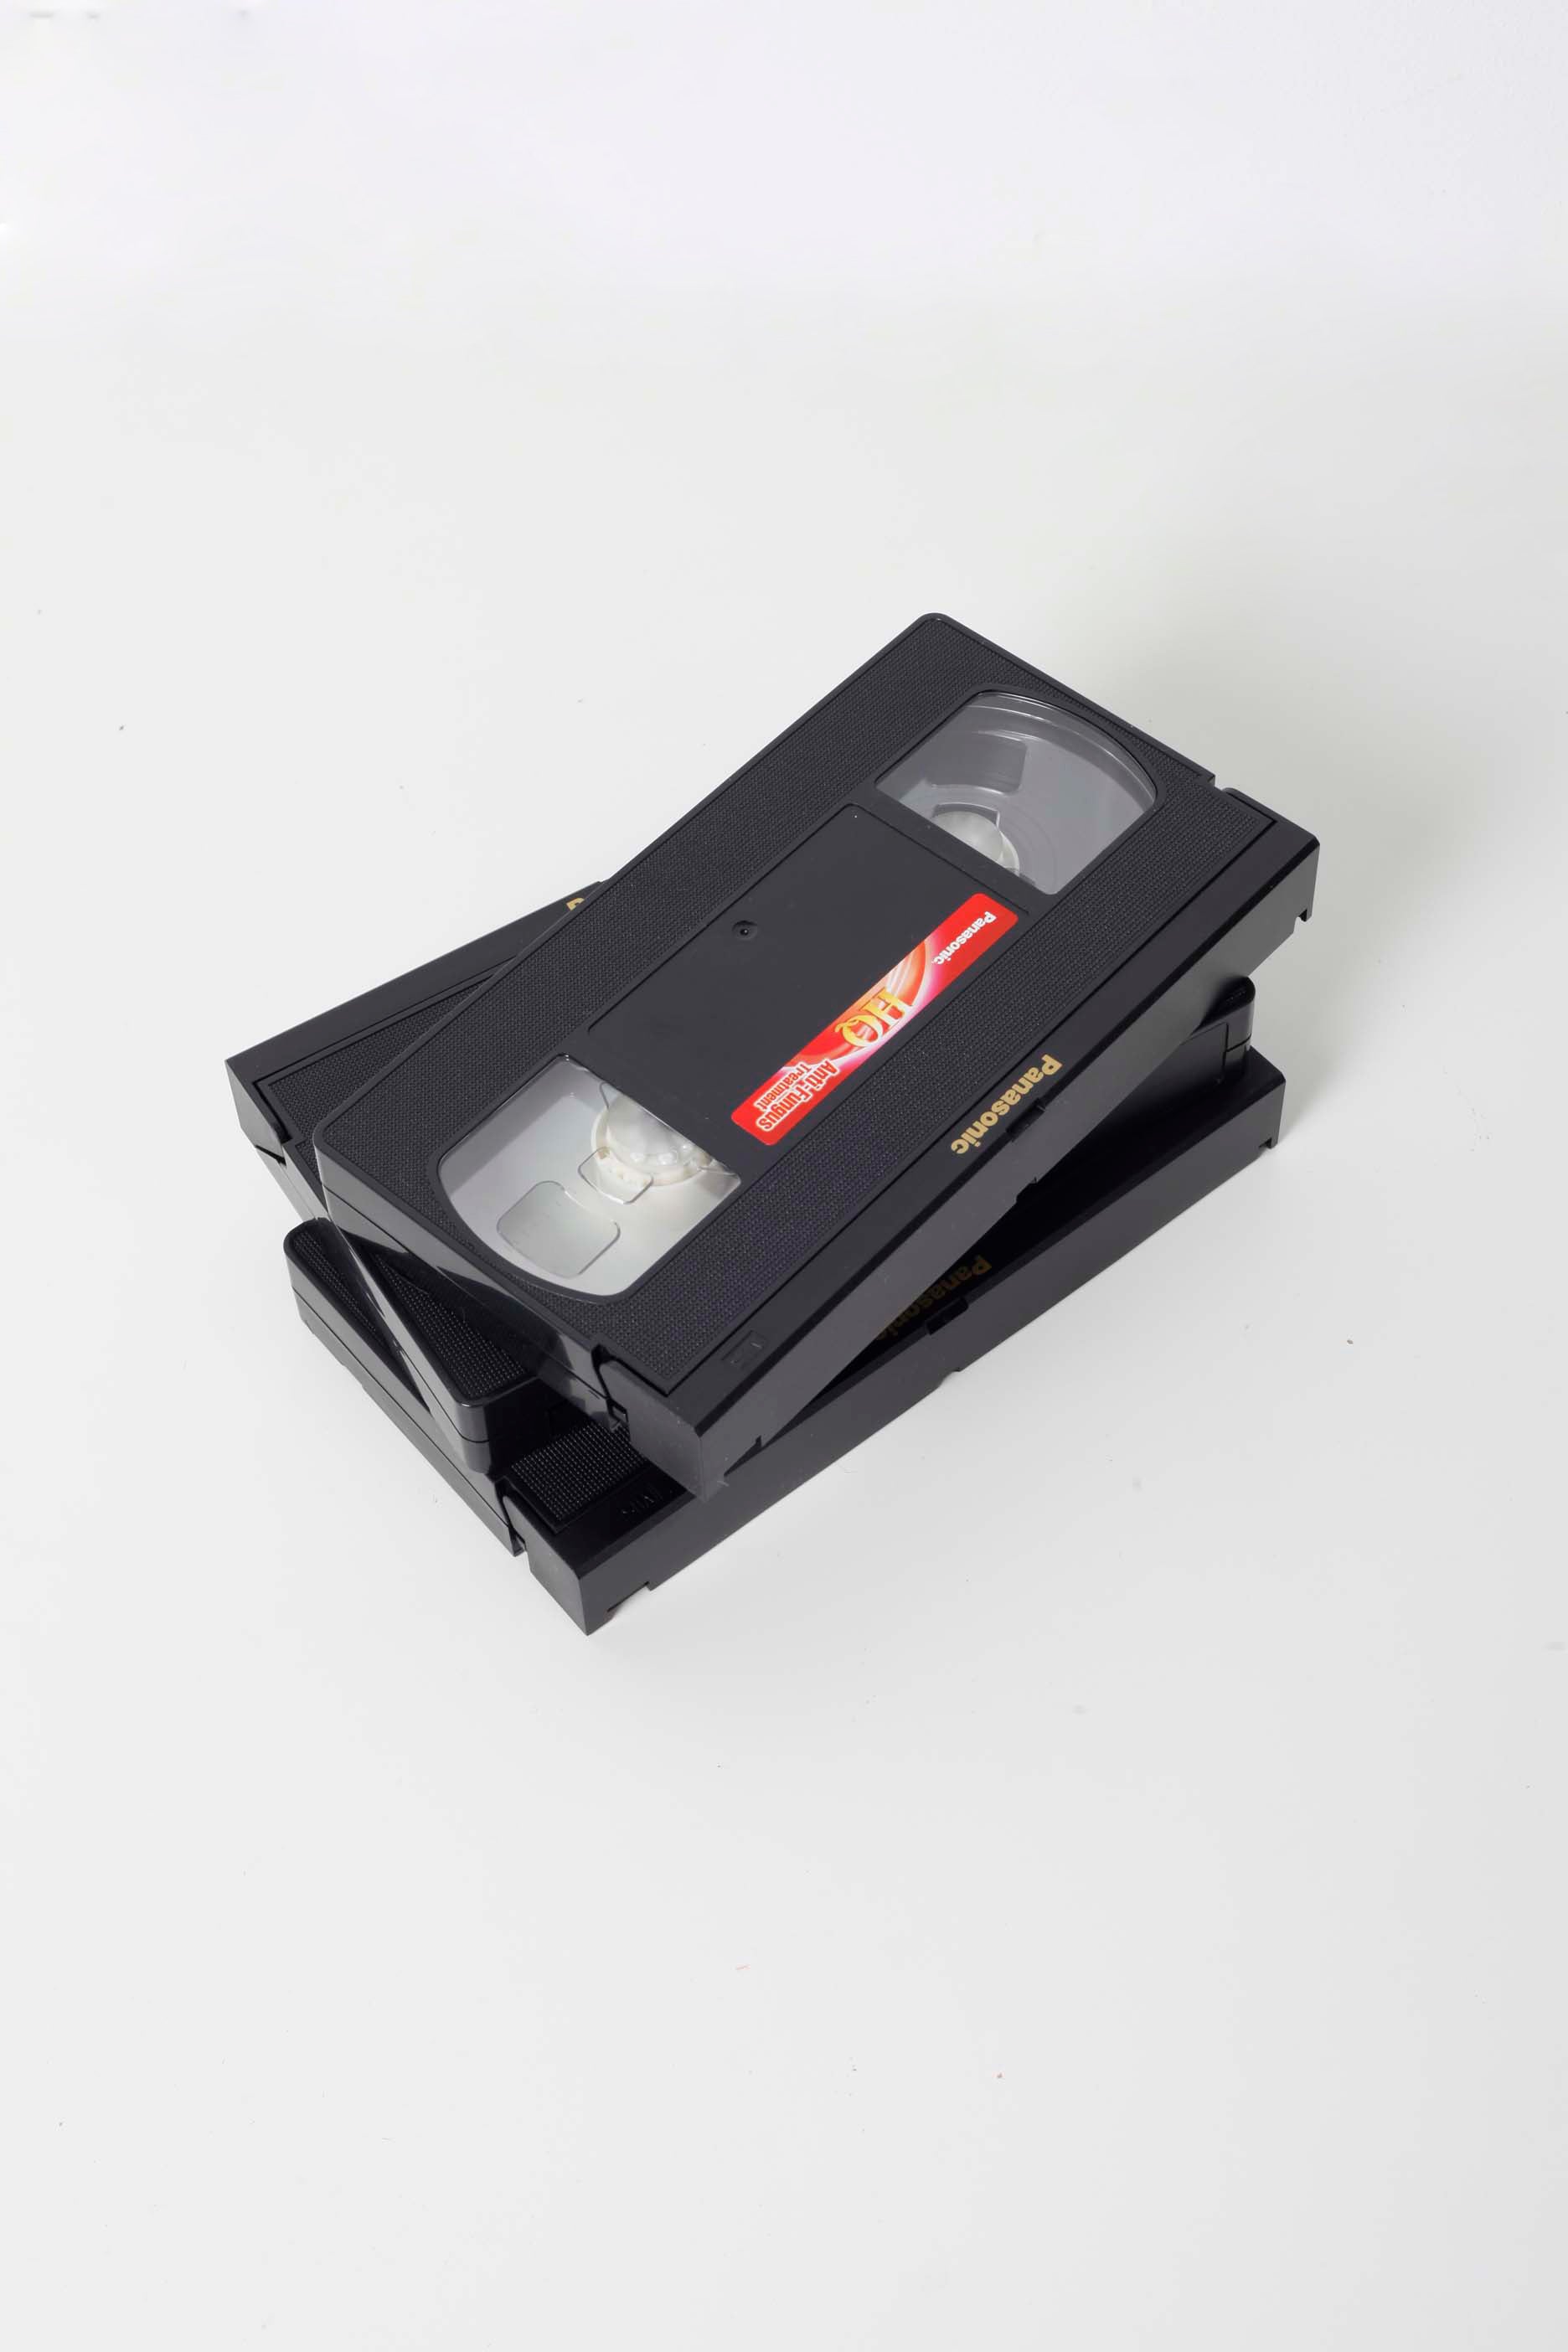 Vintage VHS Tapes